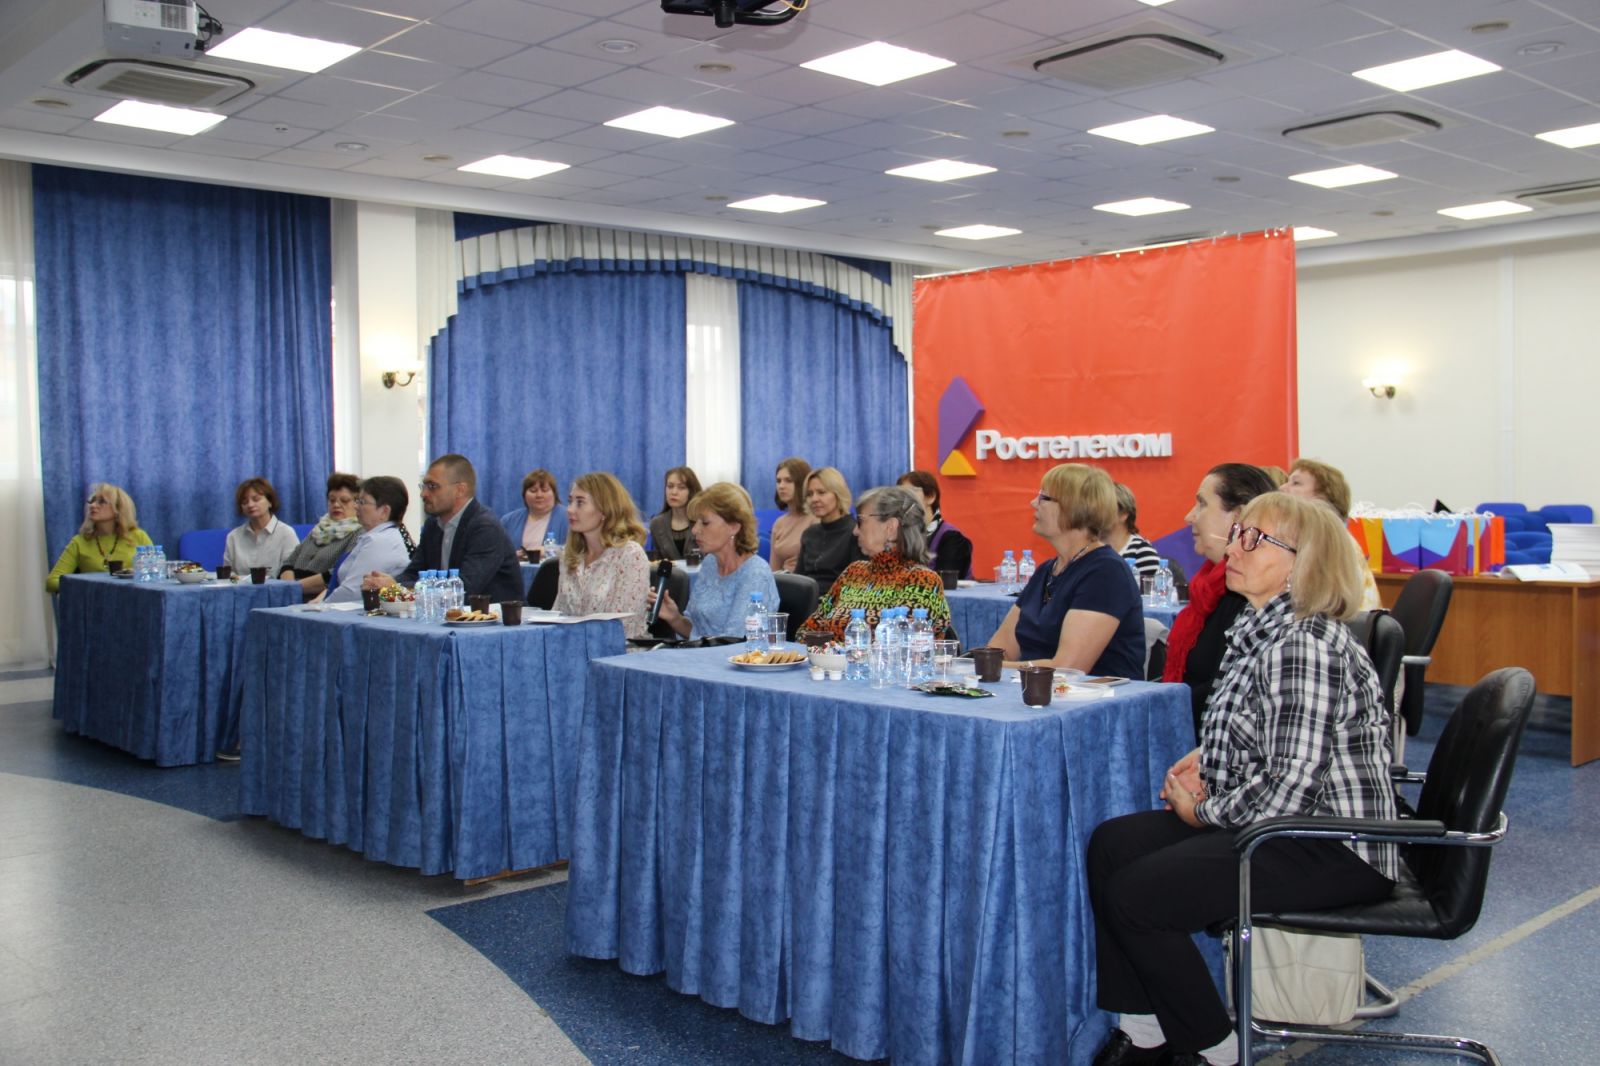 Ростелеком пригласил пенсионеров онлайн-встречу сибирскими коллегами